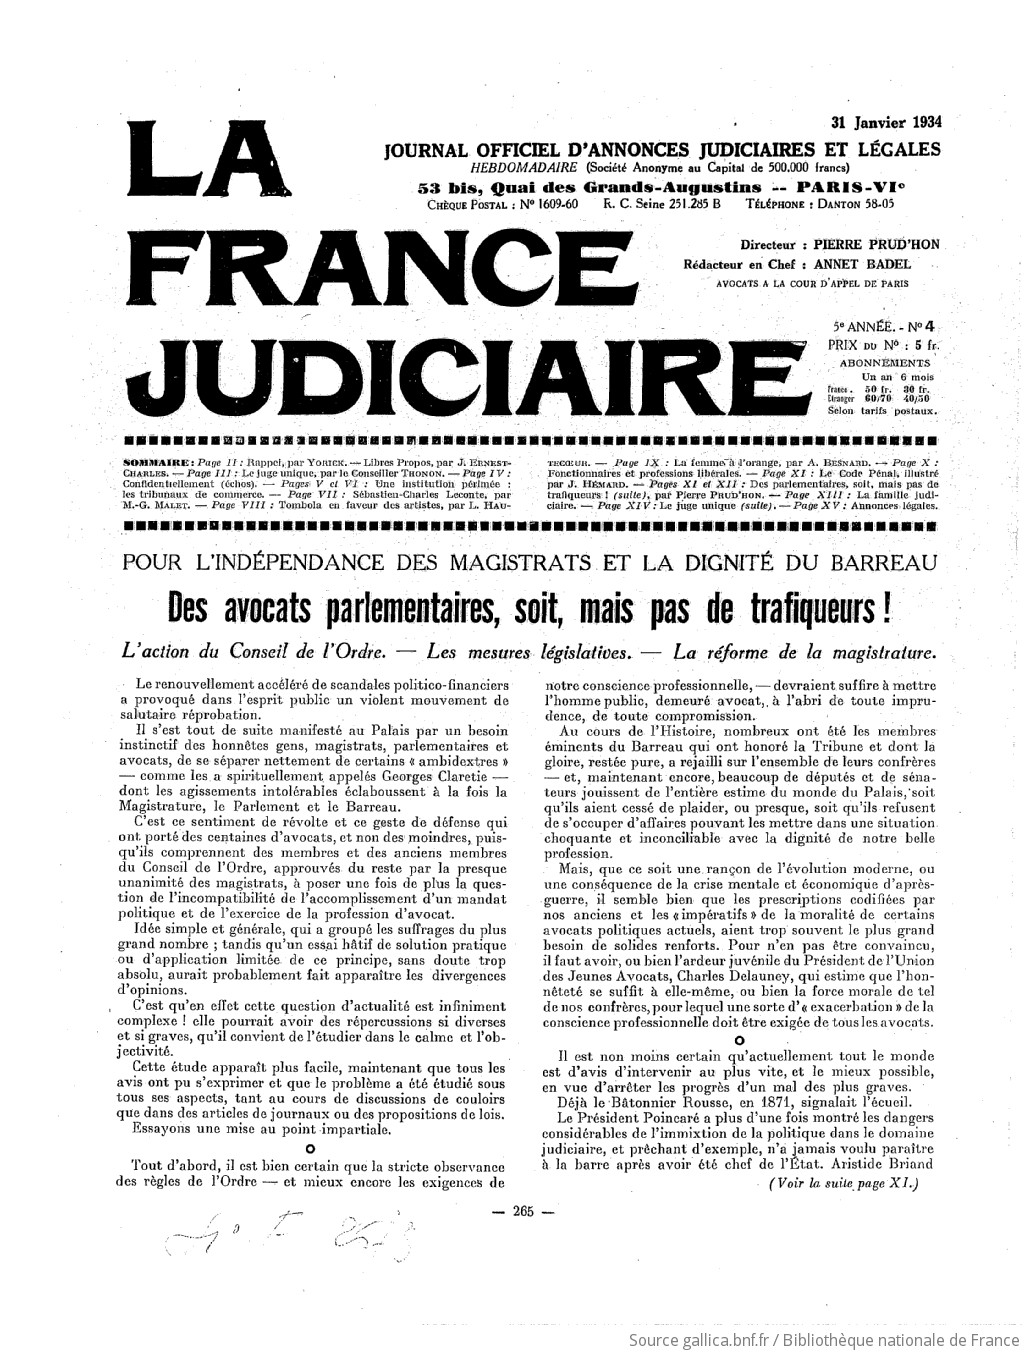 La France judiciaire : journal hebdomadaire universel / rédacteur en chef Pierre Prud'hon,...